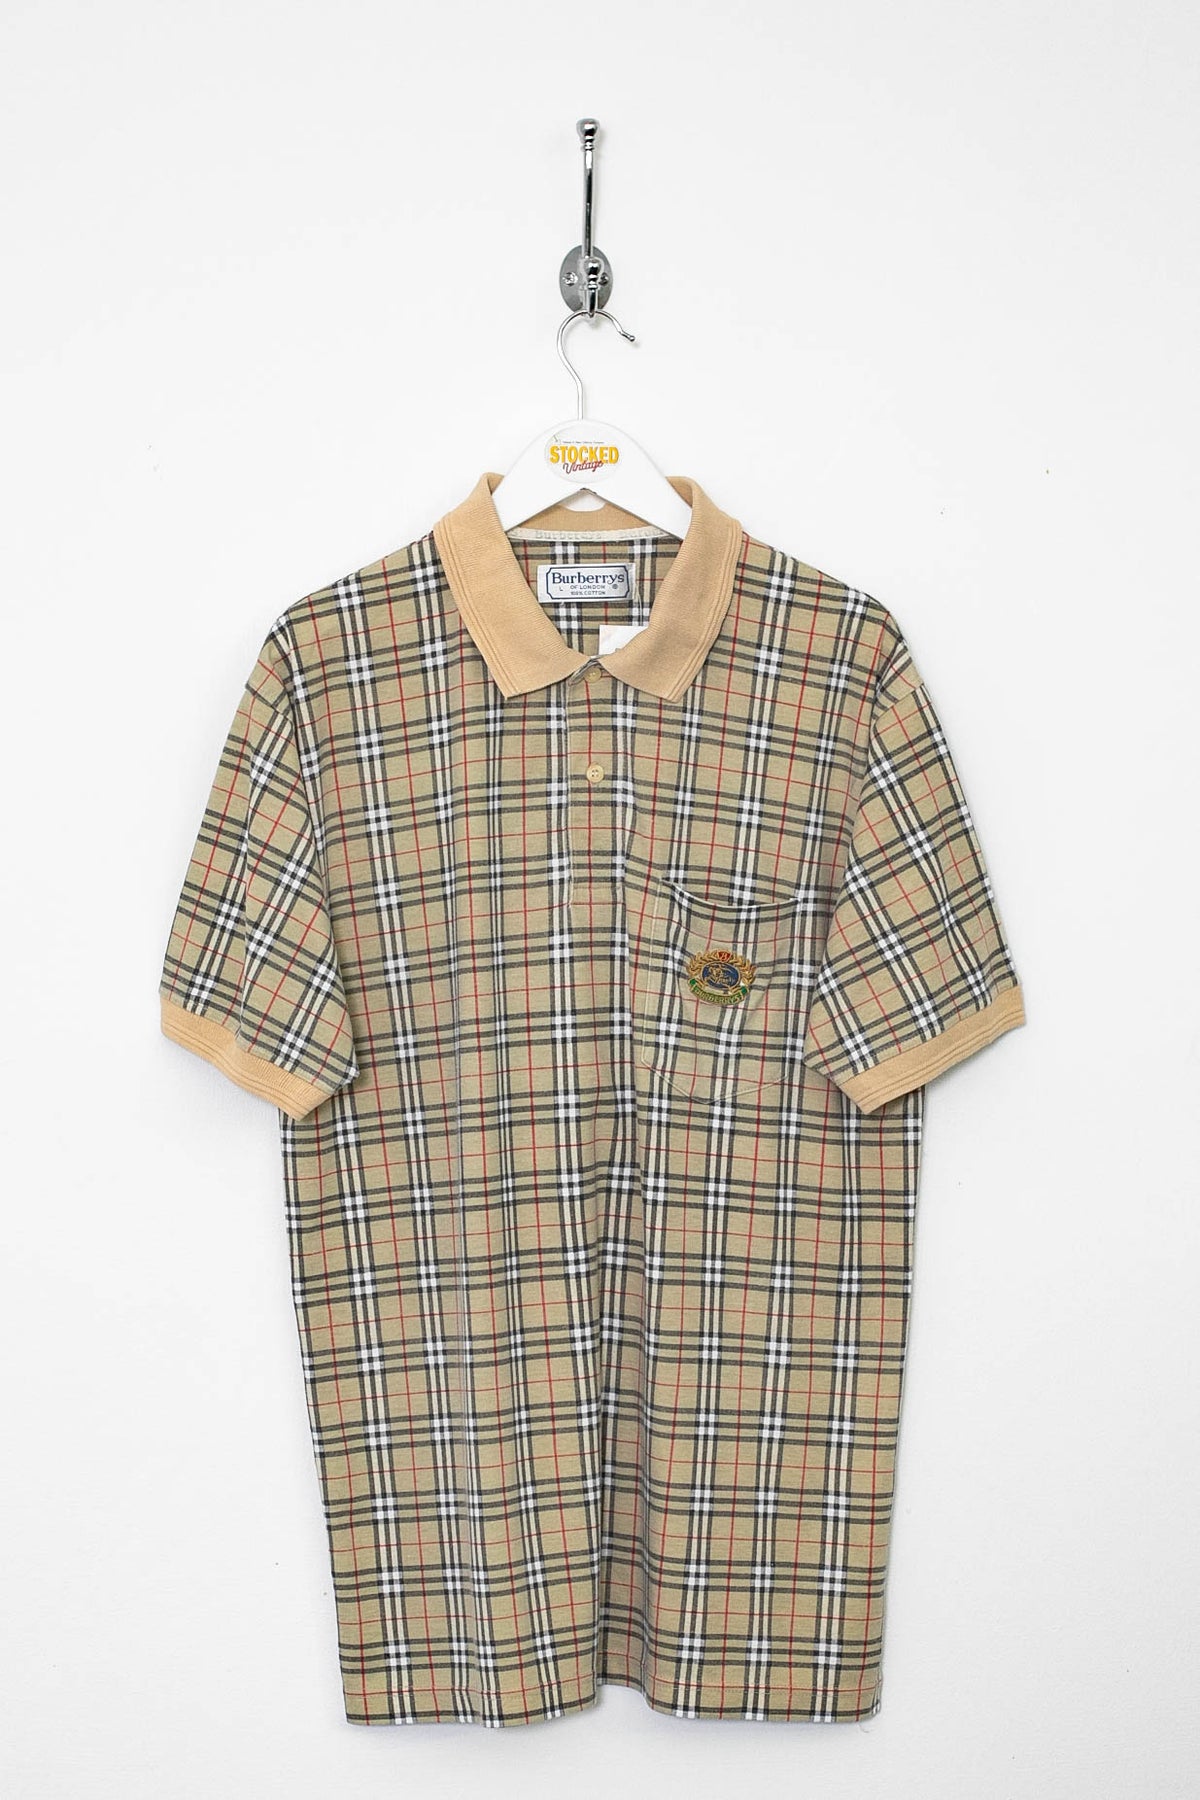 90s Burberry Nova Check Polo Shirt (M)